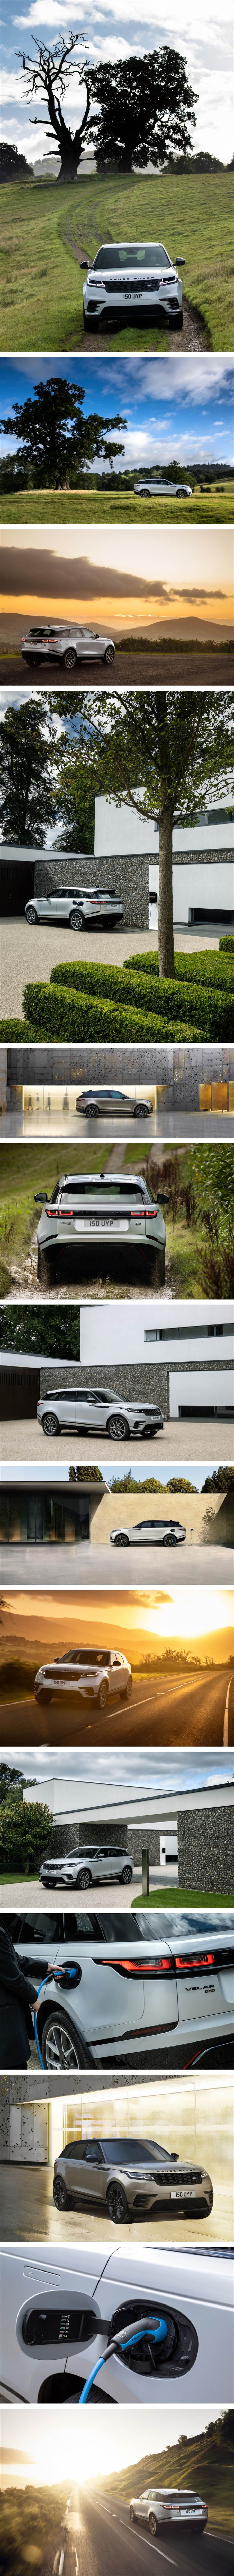 內裝小幅修飾、導入 PHEV/MHEV 技術的新動力總成，Land Rover Range Rover Velar 新年式亮相